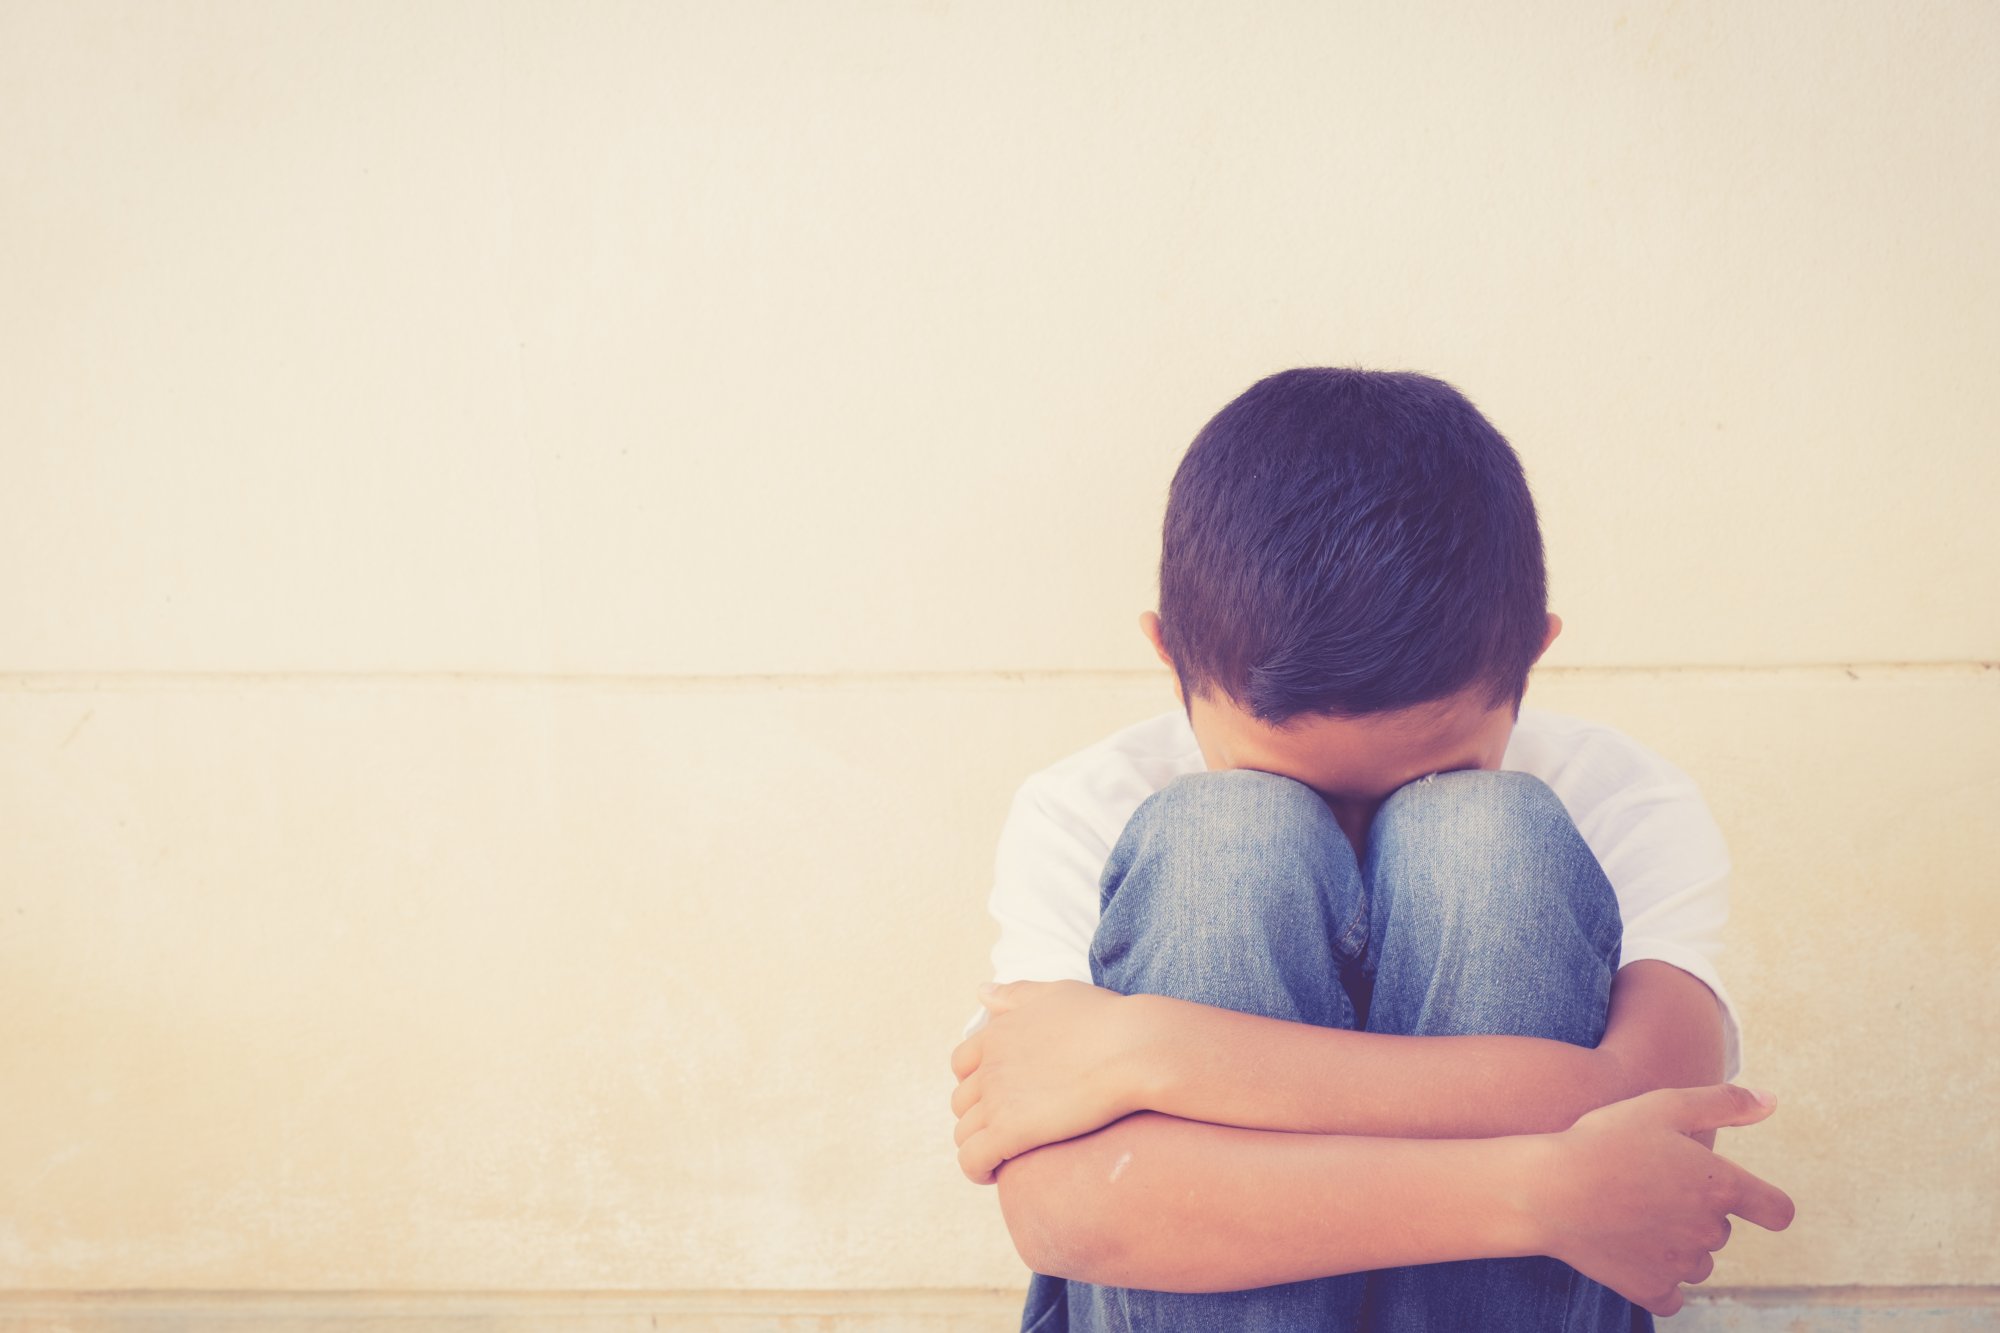 Σοκαριστική καταγγελία: 10χρονος θύμα σεξουαλικής βίας σε σχολείο